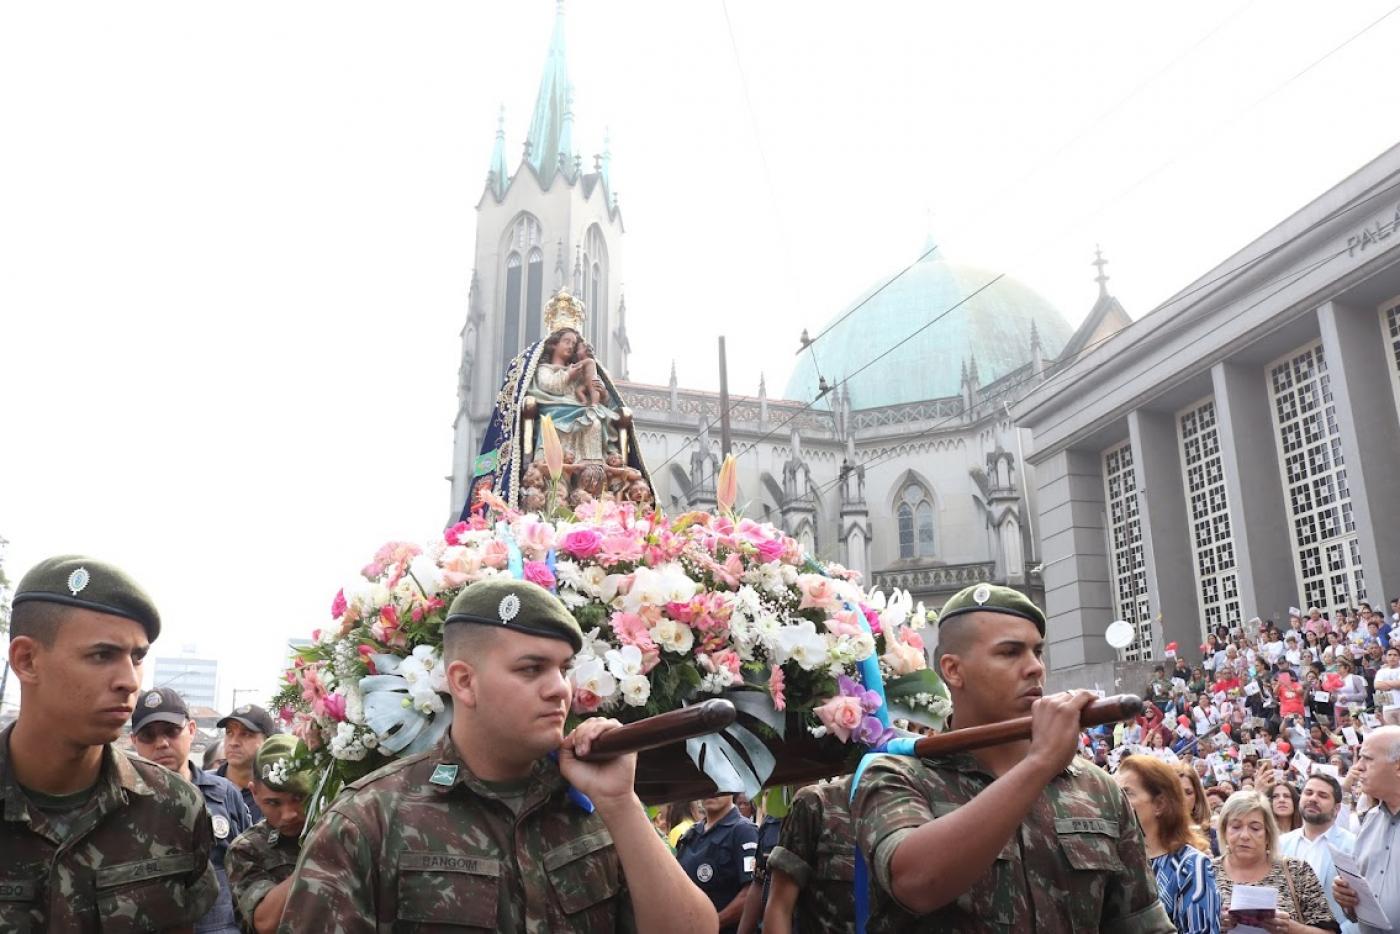 soldados carregam imagem com catedral ao fundo #paratodosverem